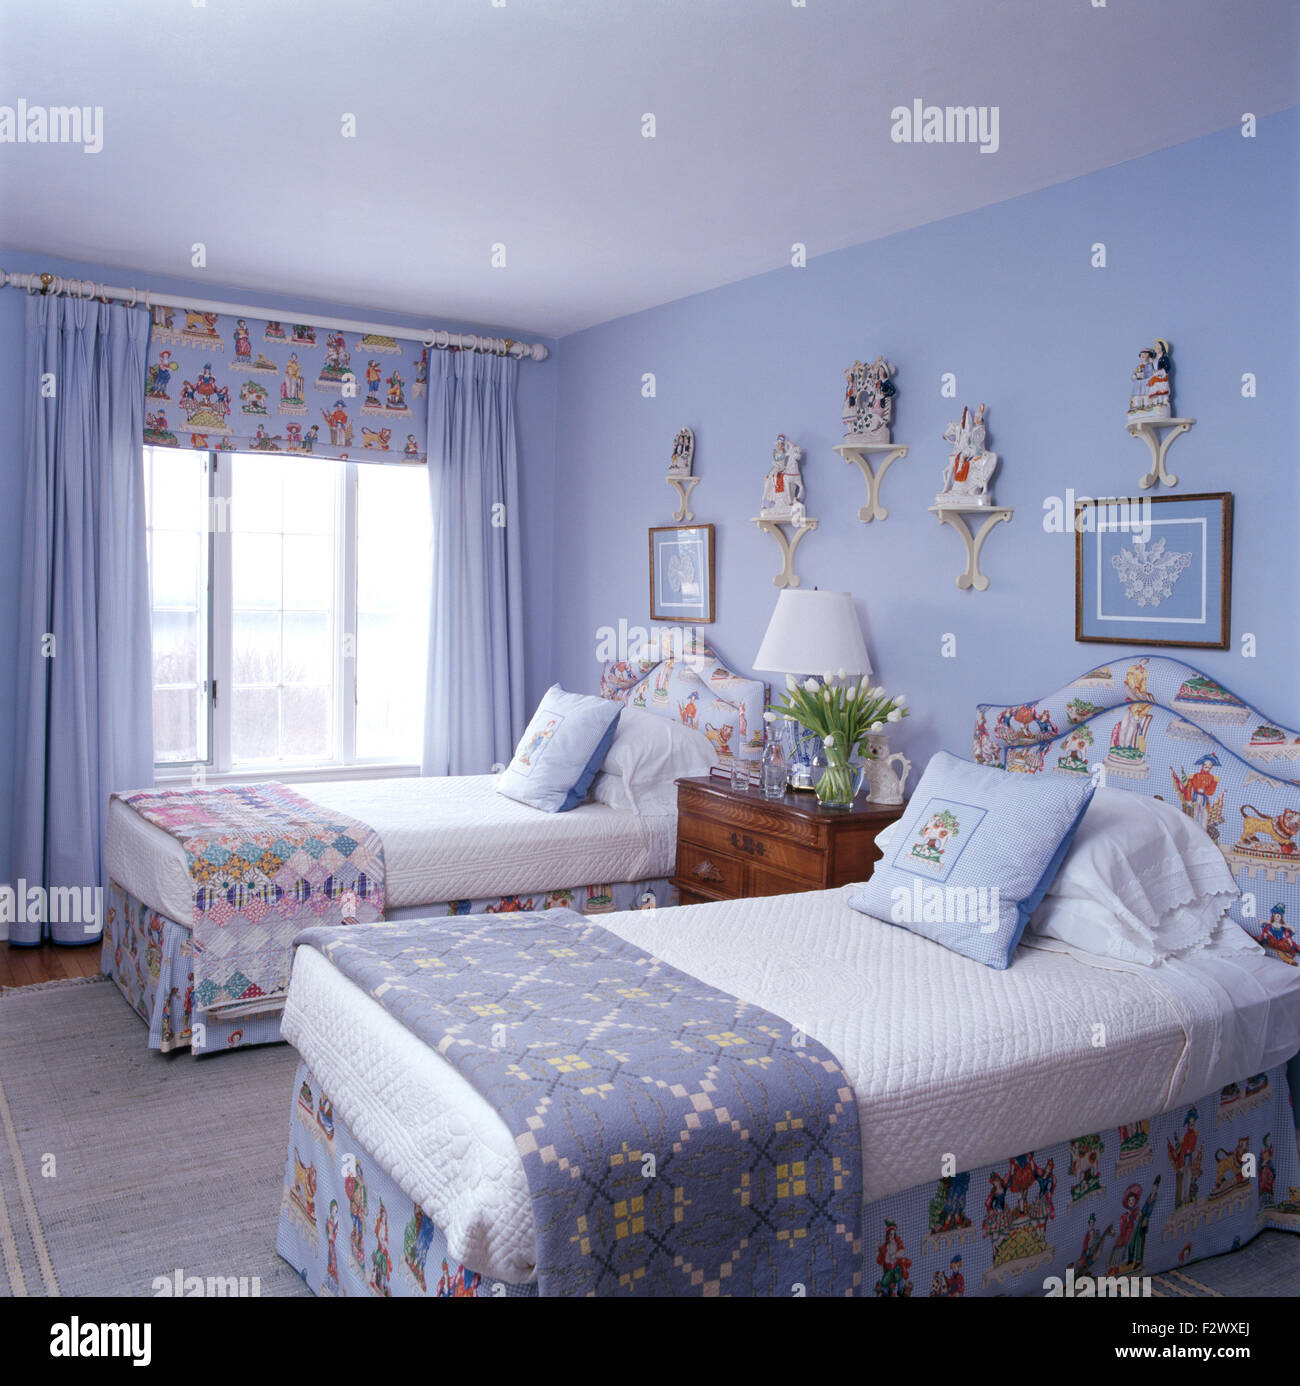 Walisische Decke und einem Patchwork quilt auf Einzelbetten in blassen blauen Schlafzimmer mit blauen Vorhängen und gemusterten blind Stockfoto